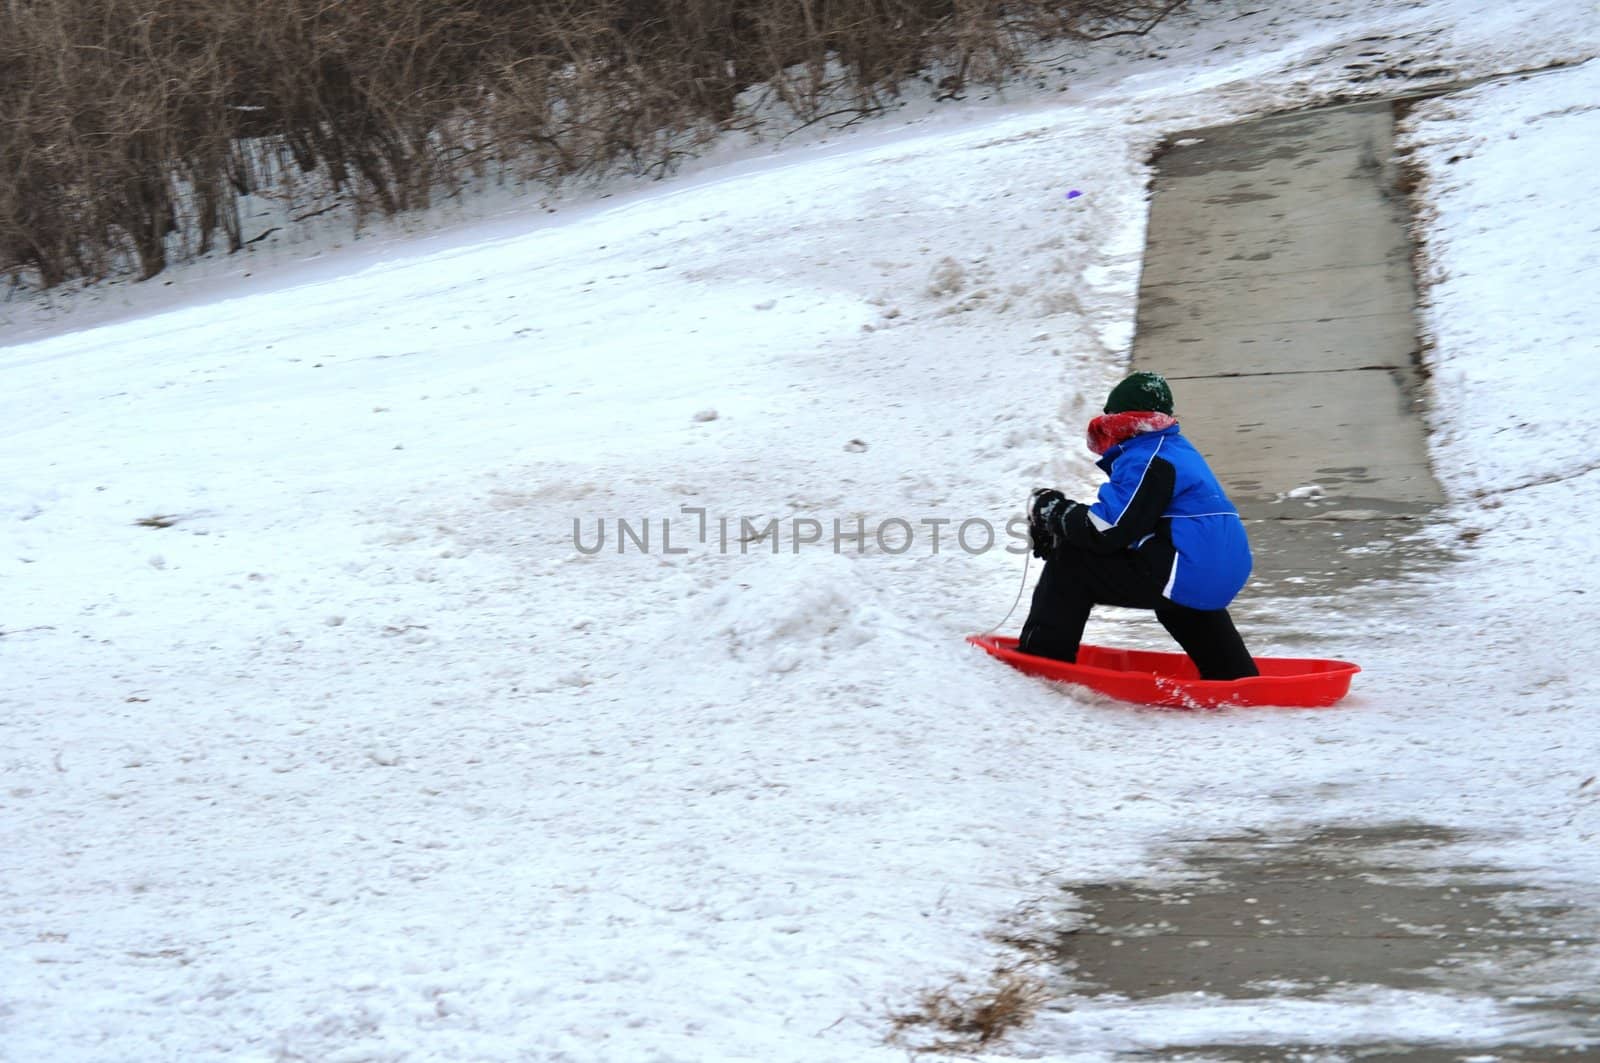 sledding near the sidewalk by RefocusPhoto